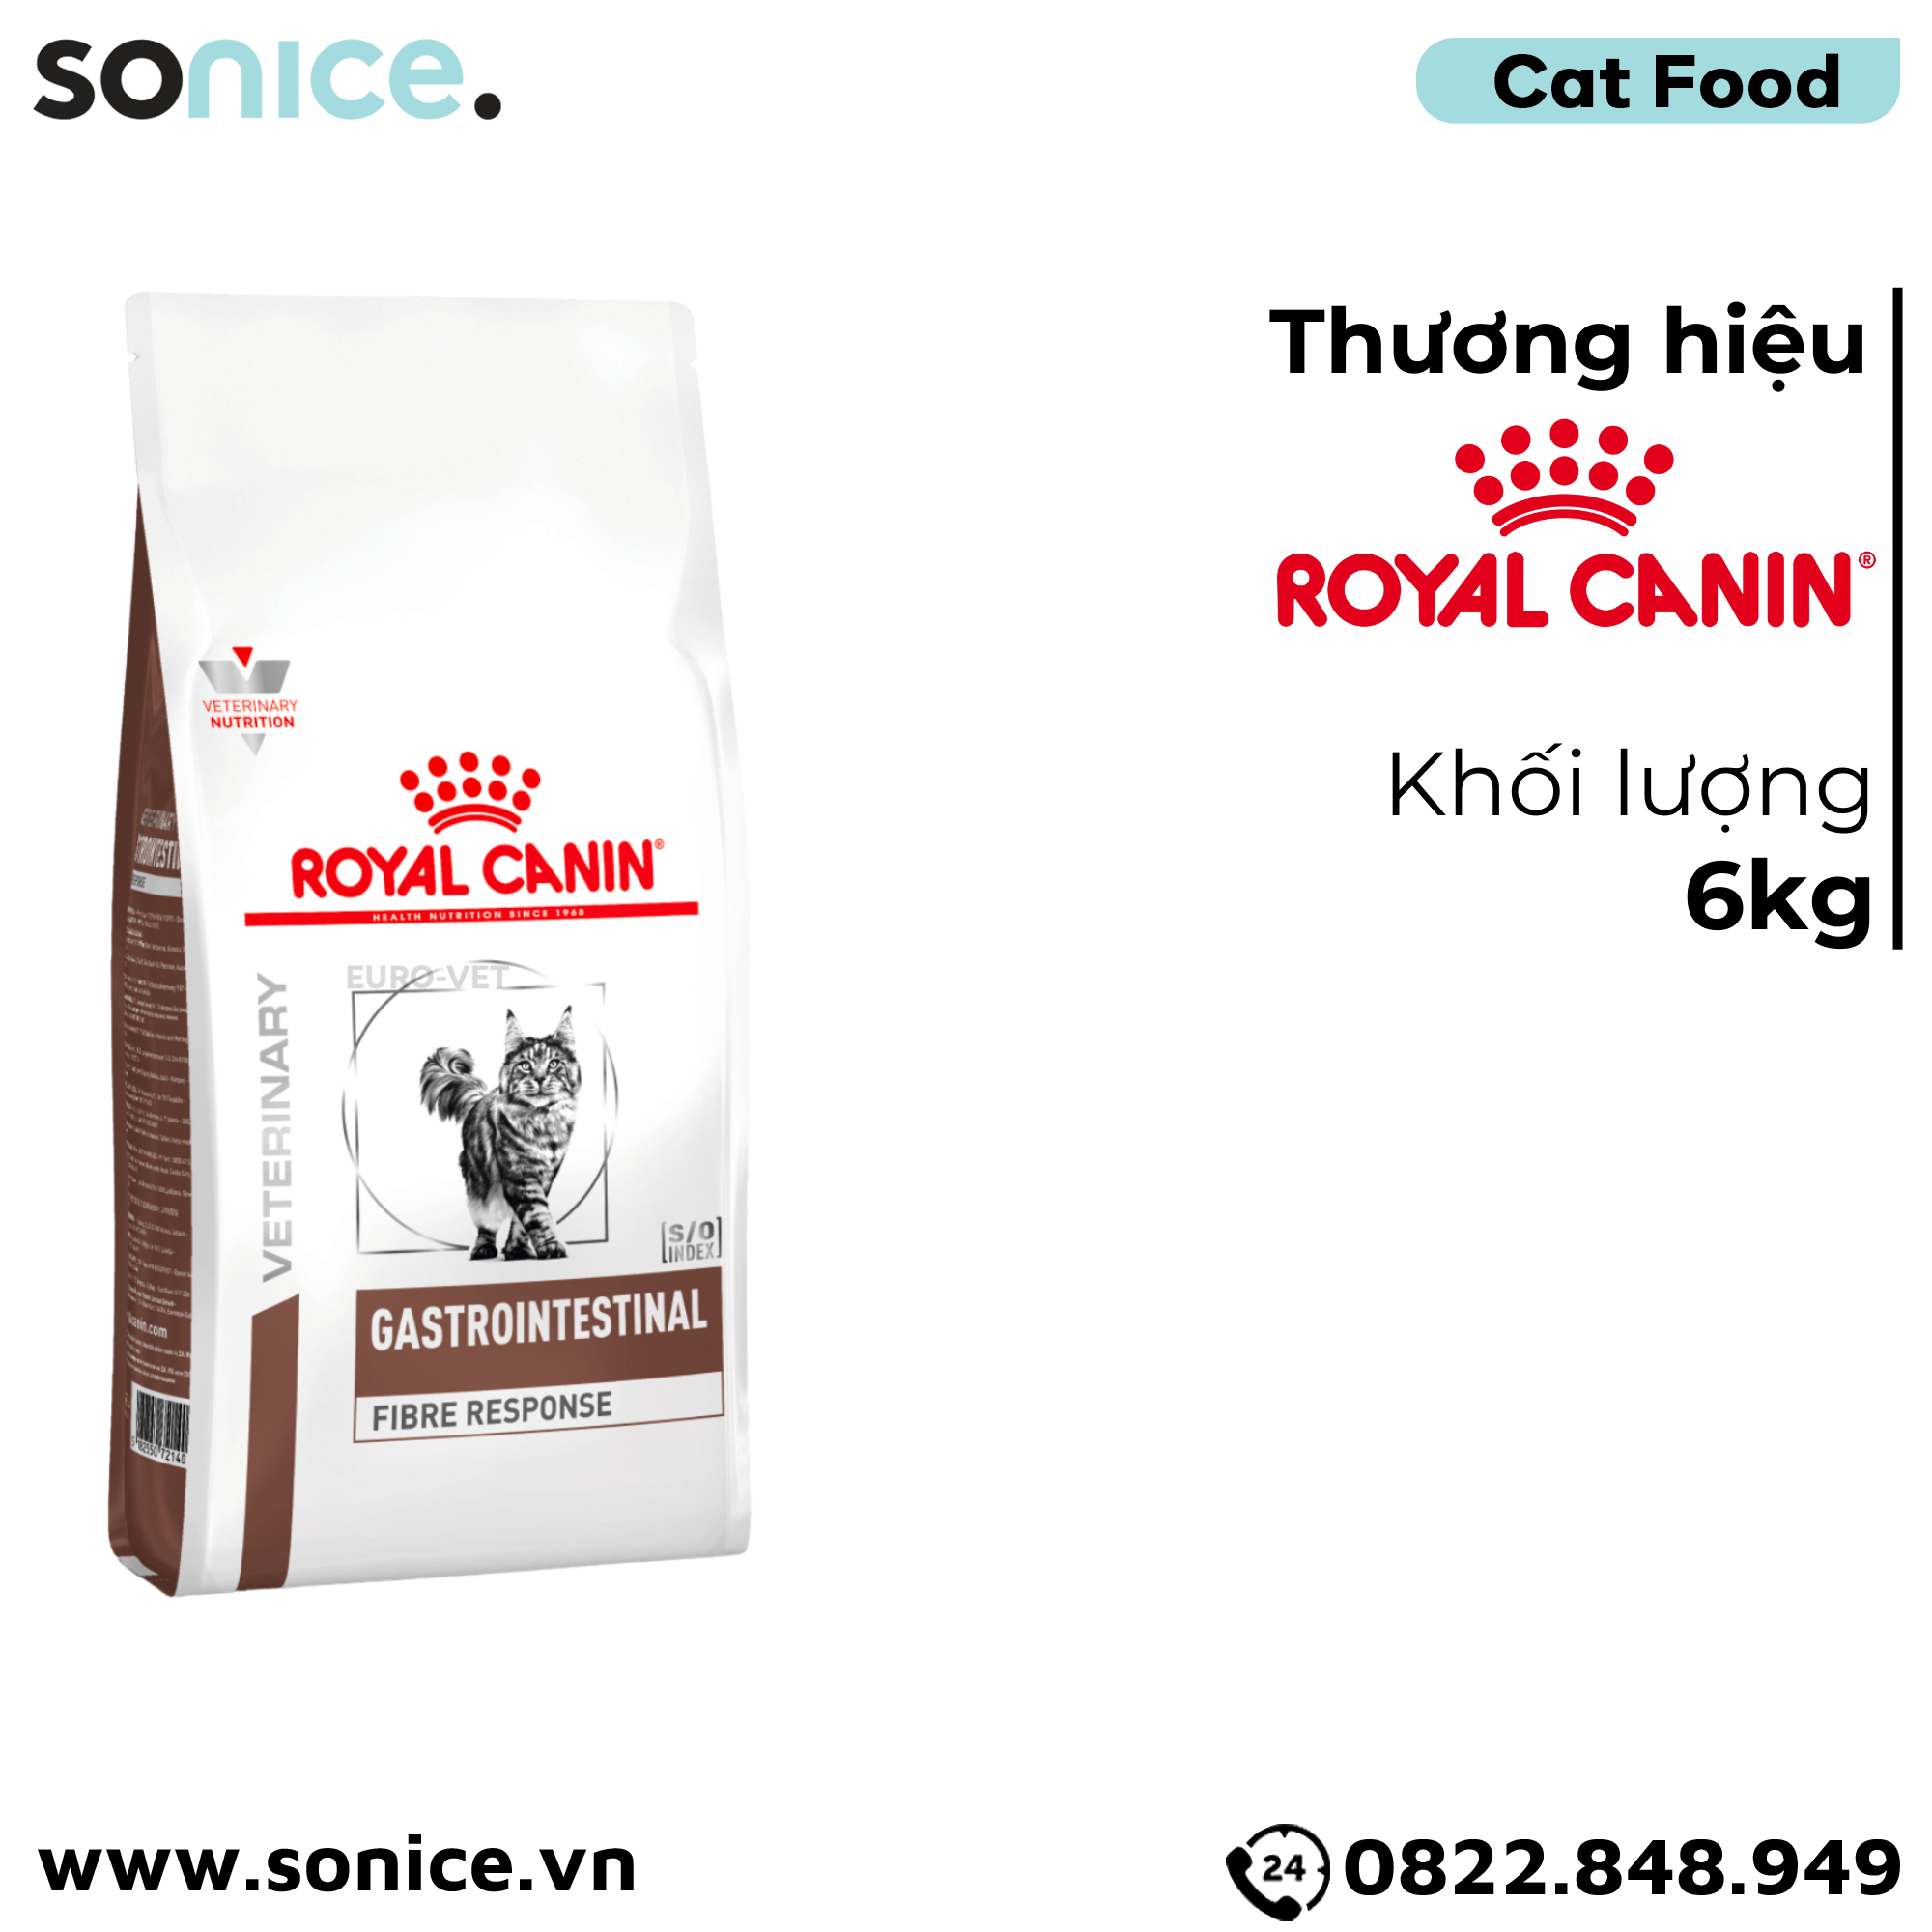  Thức ăn mèo Royal Canin Gastrointestinal Fibre Response 6kg - Hỗ trợ tiêu hoá SONICE. 